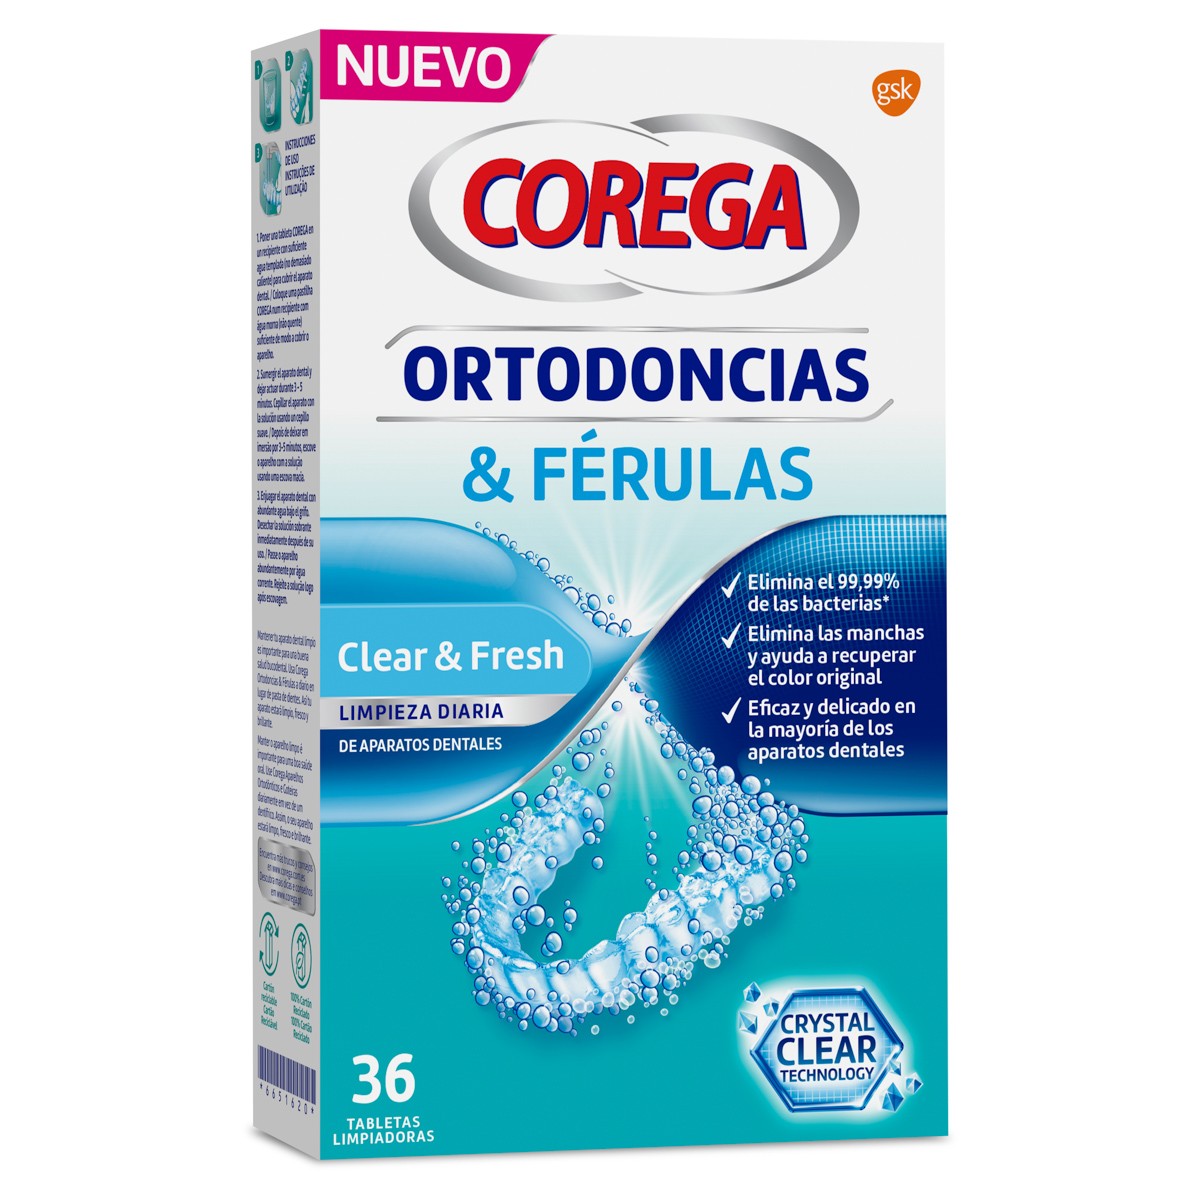 Corega ortodoncias 36 tabletas